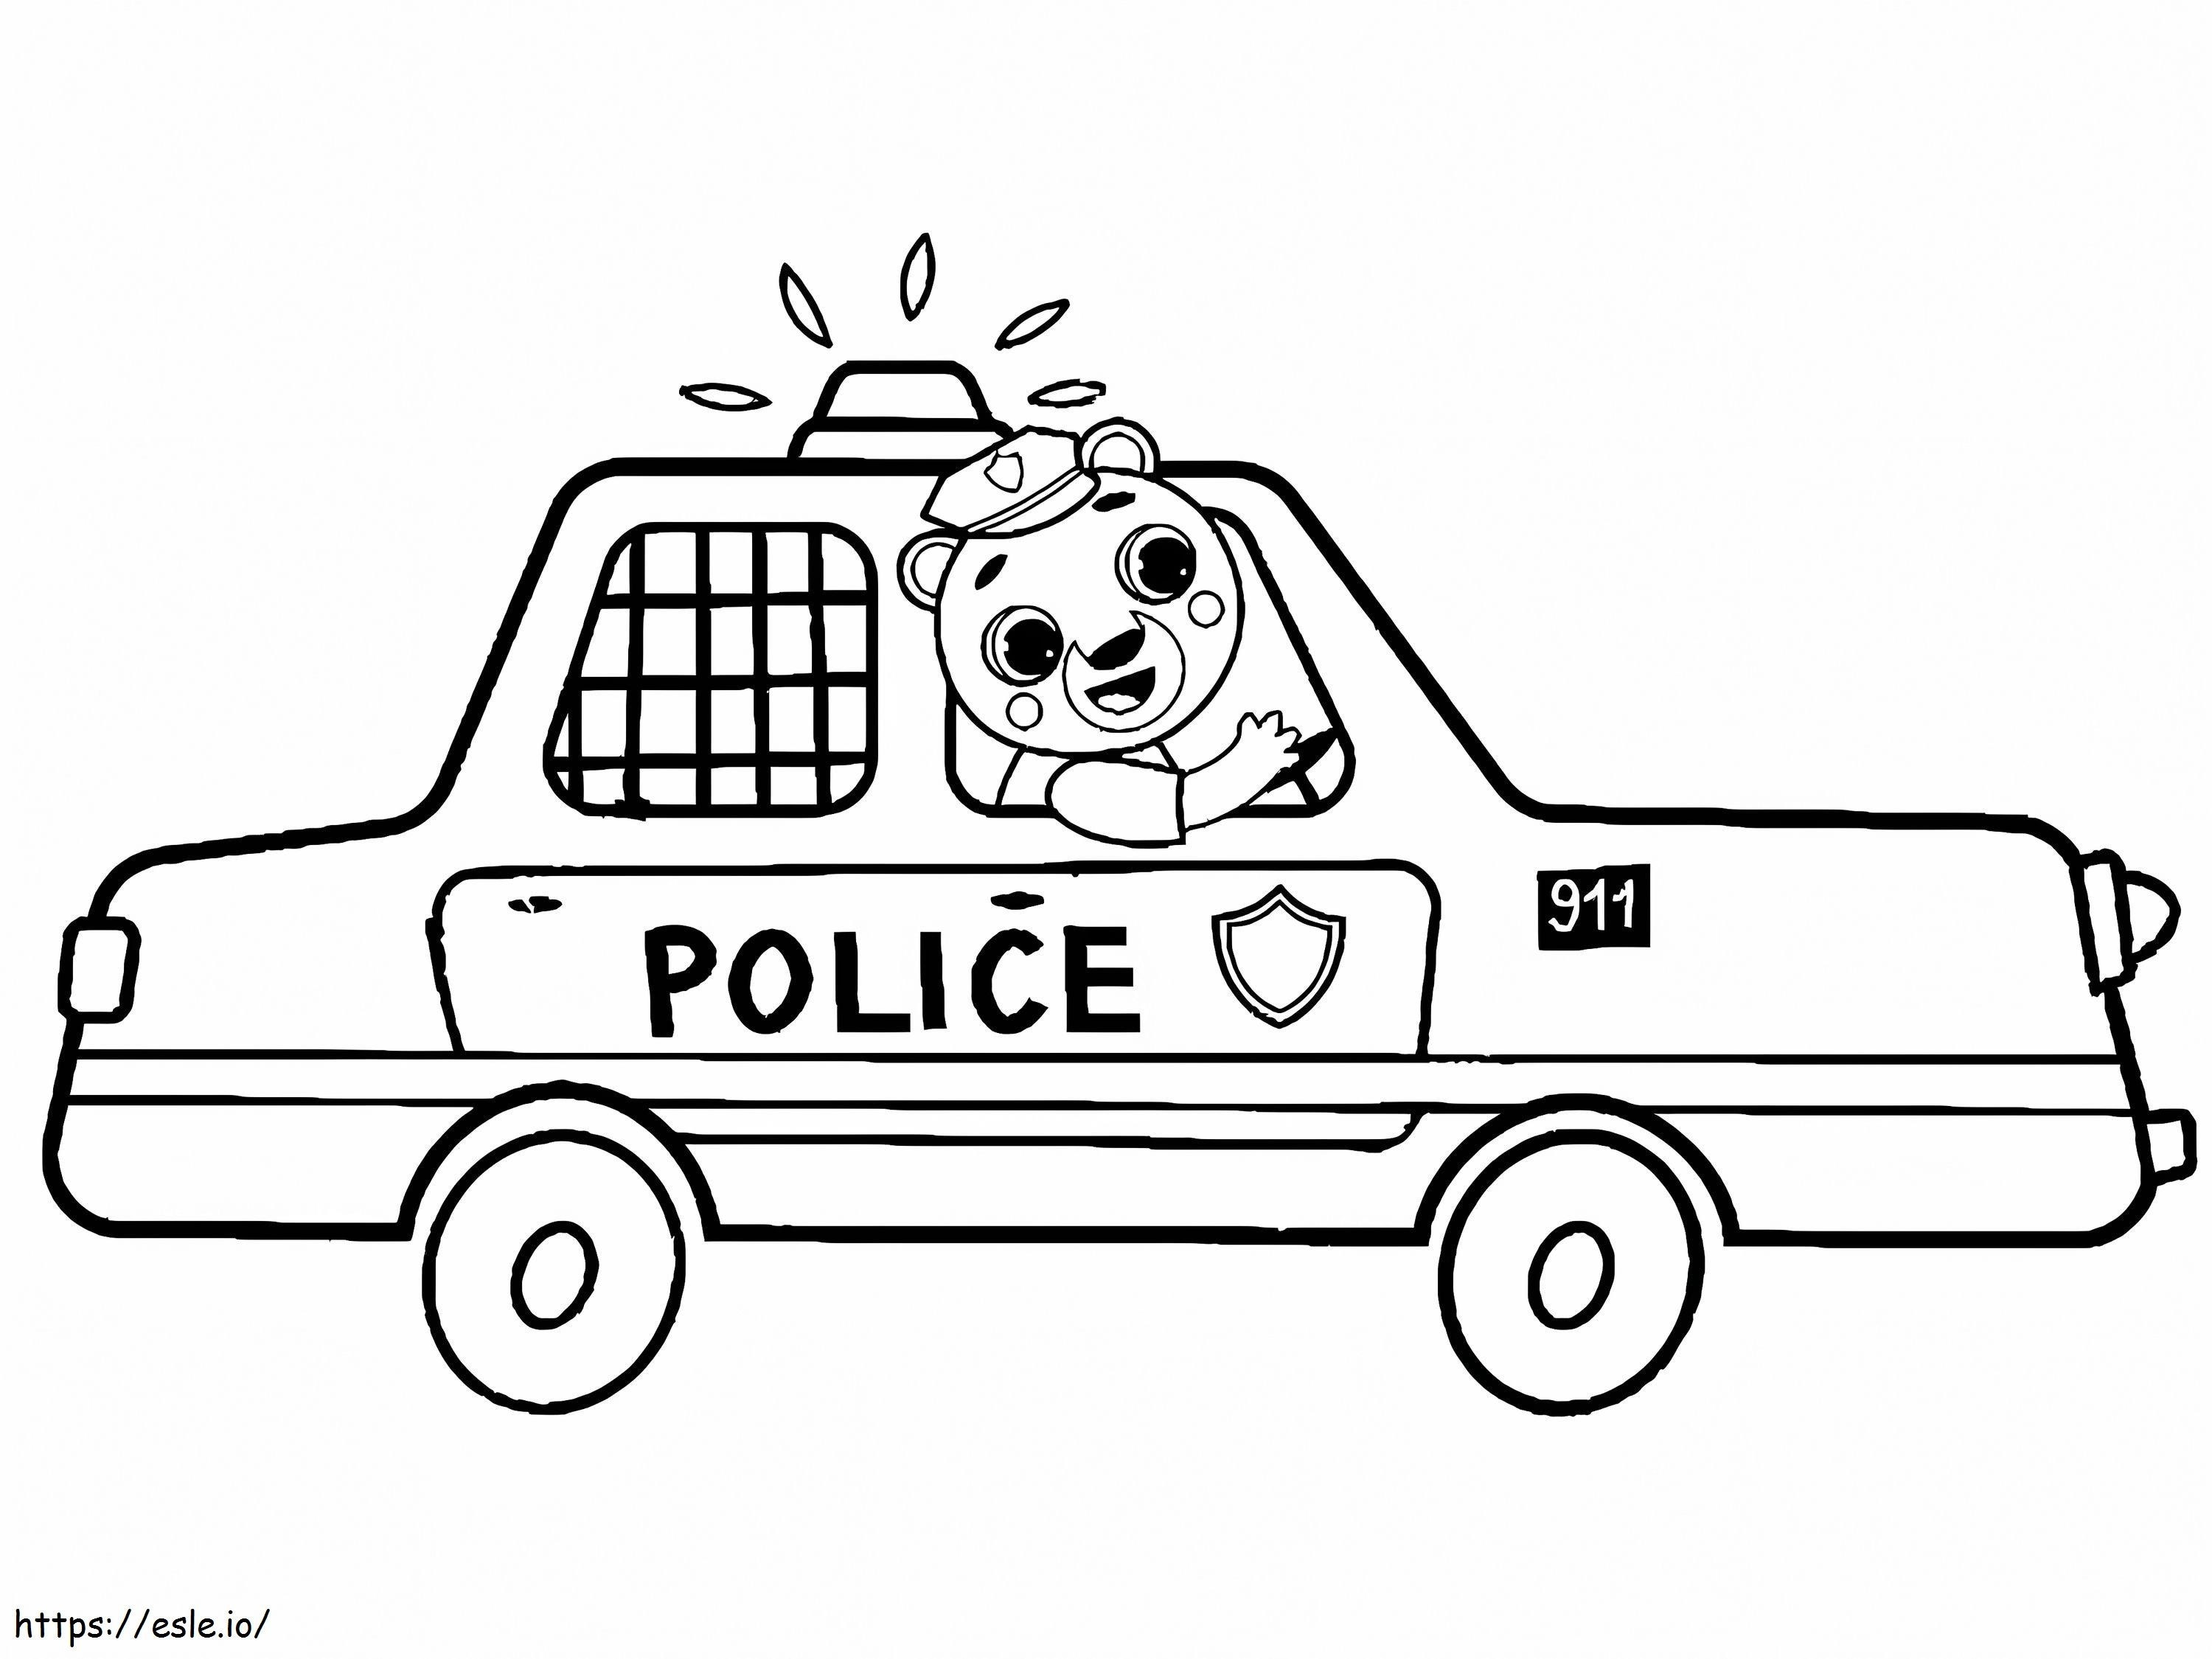 Niedlicher Bär im Polizeiauto ausmalbilder